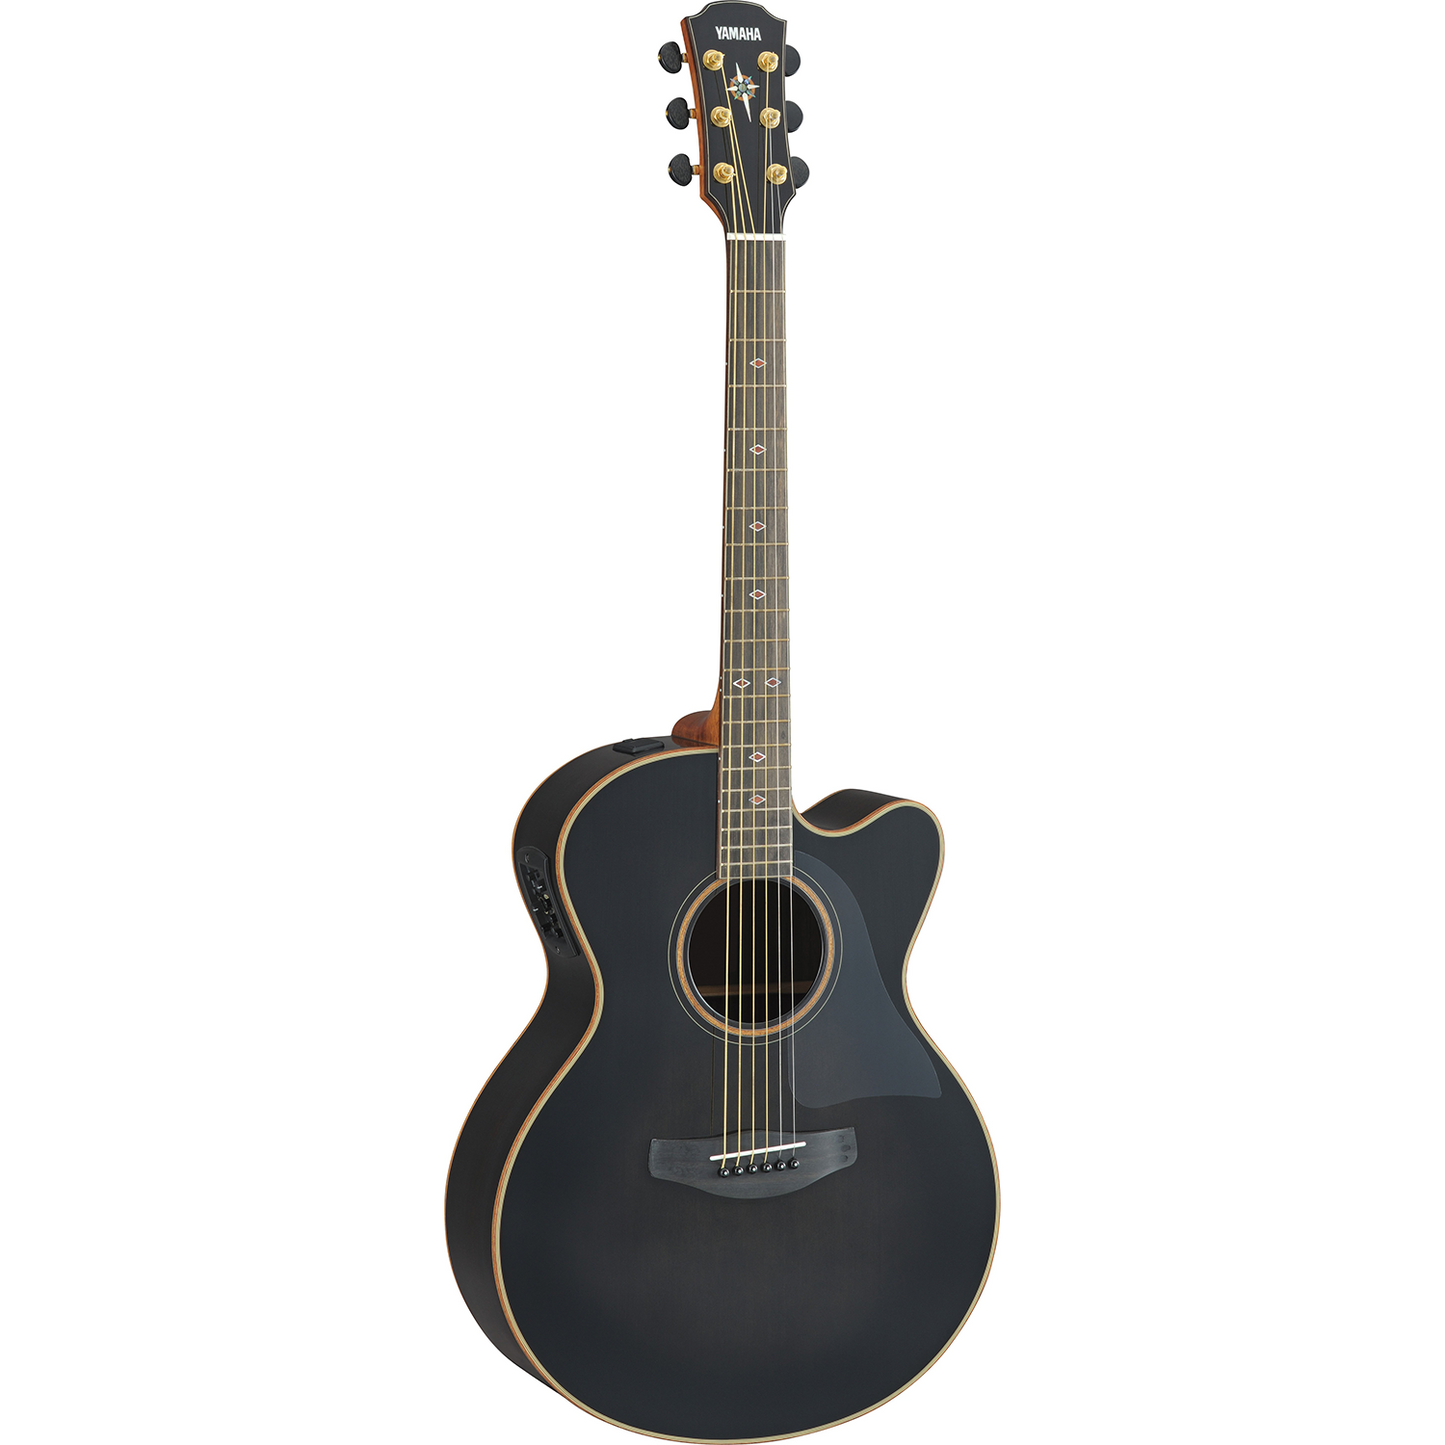 Yamaha CPX1200II Translucent Black Acoustic Guitar w/Gig Back